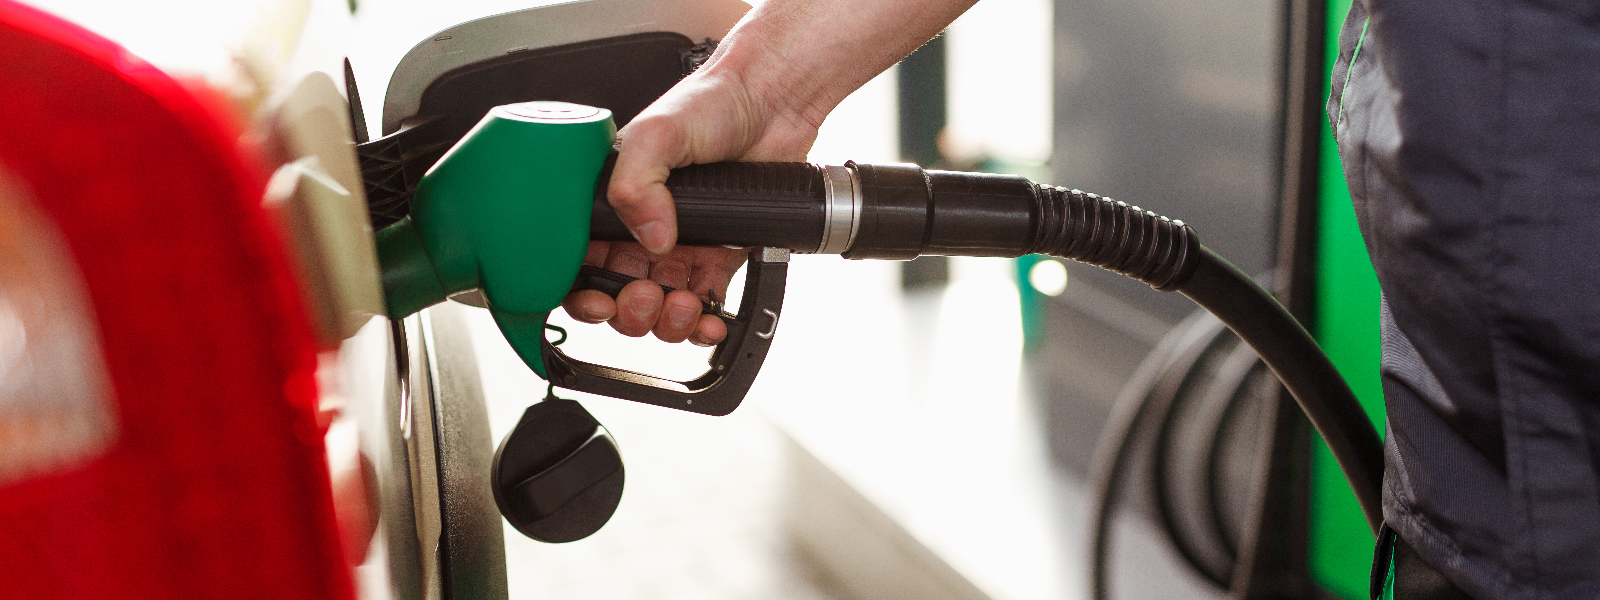 MARK OIL OÜ - Pakume laia valikut kütuseid, sealhulgas bensiine oktaanarvuga 95 ja 98, diislikütuseid nii suviseks kui ...